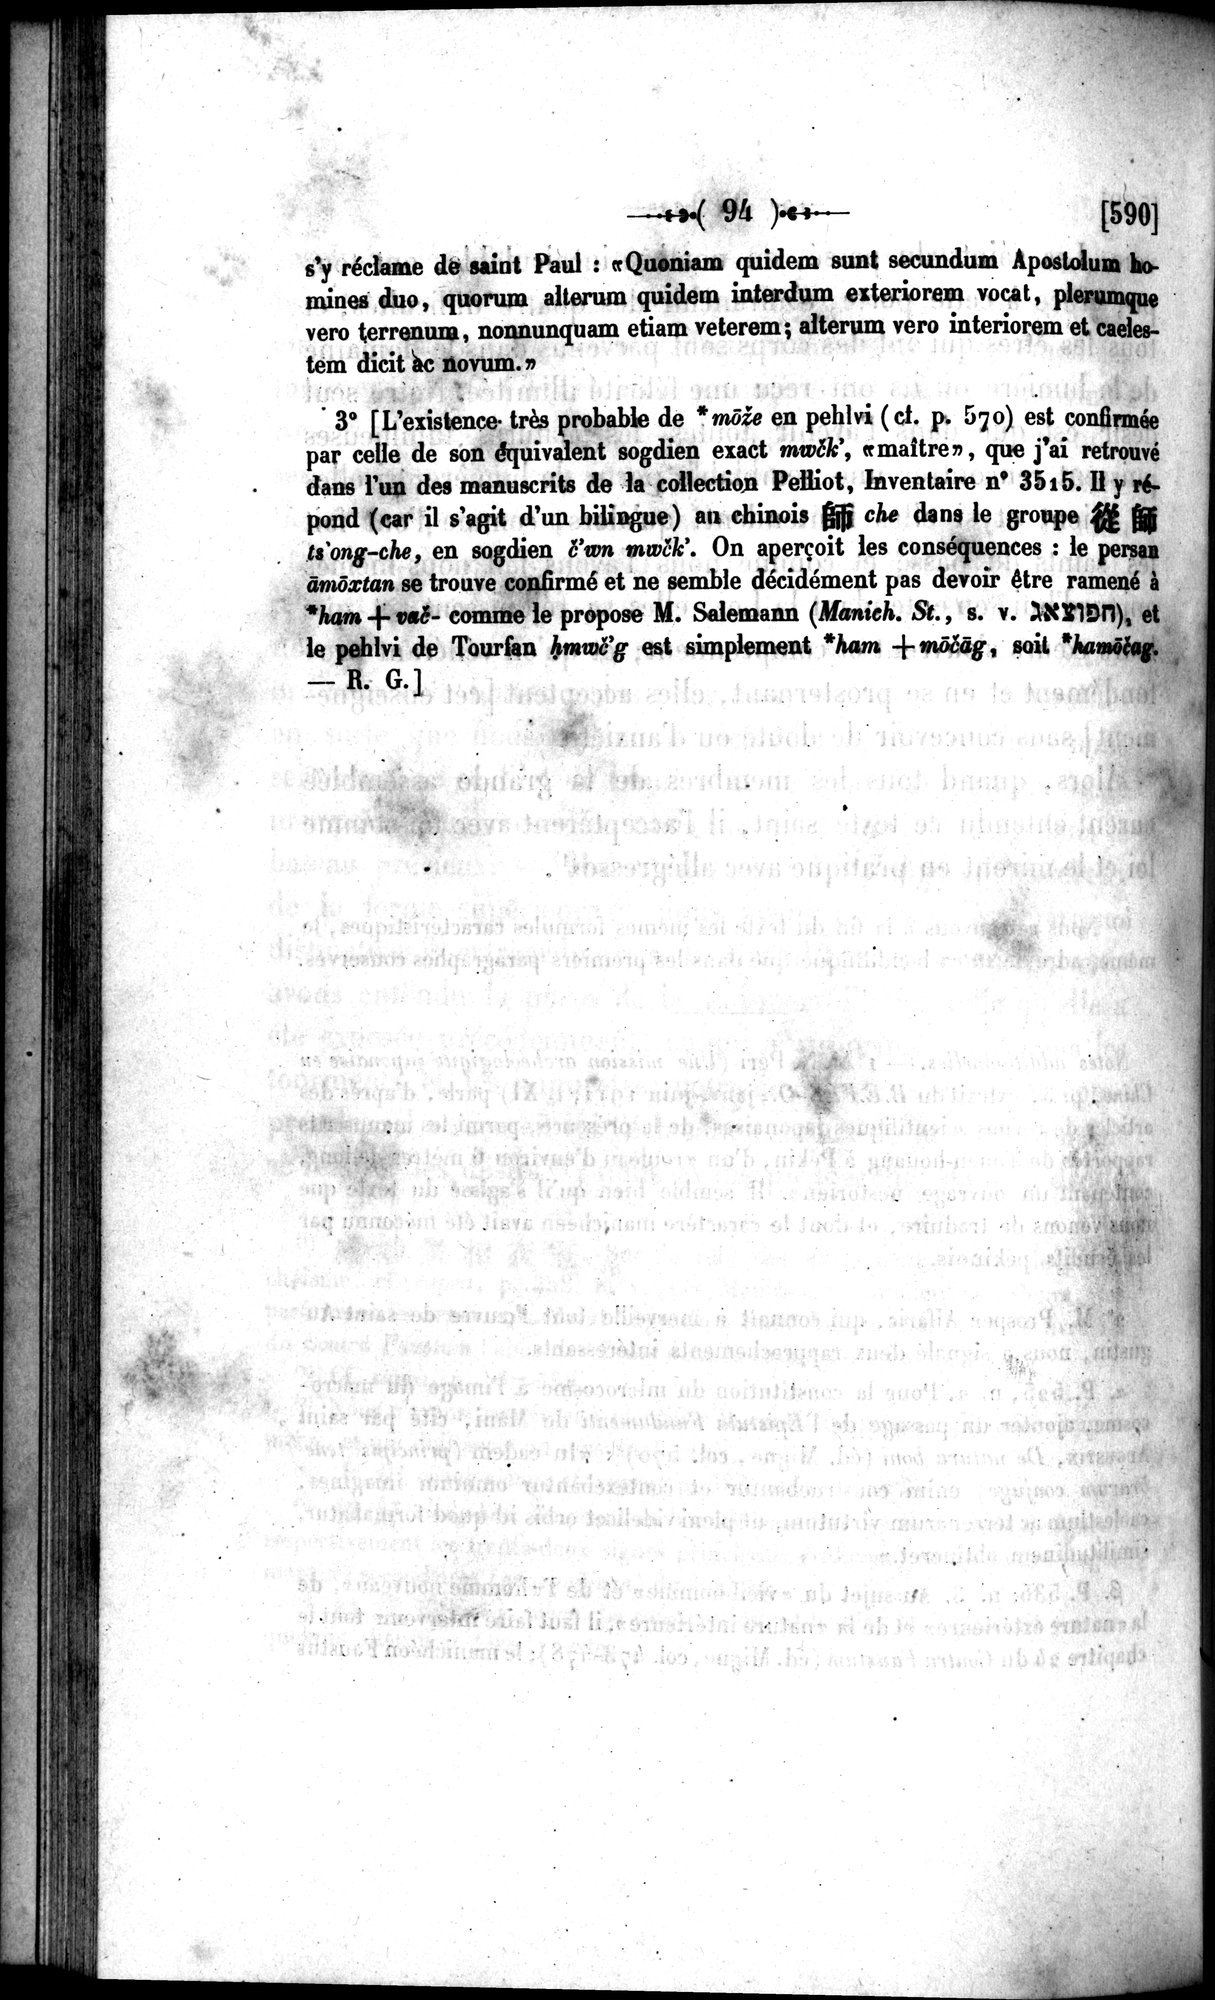 Un traité manichéen retrouvé en Chine : vol.1 / Page 104 (Grayscale High Resolution Image)